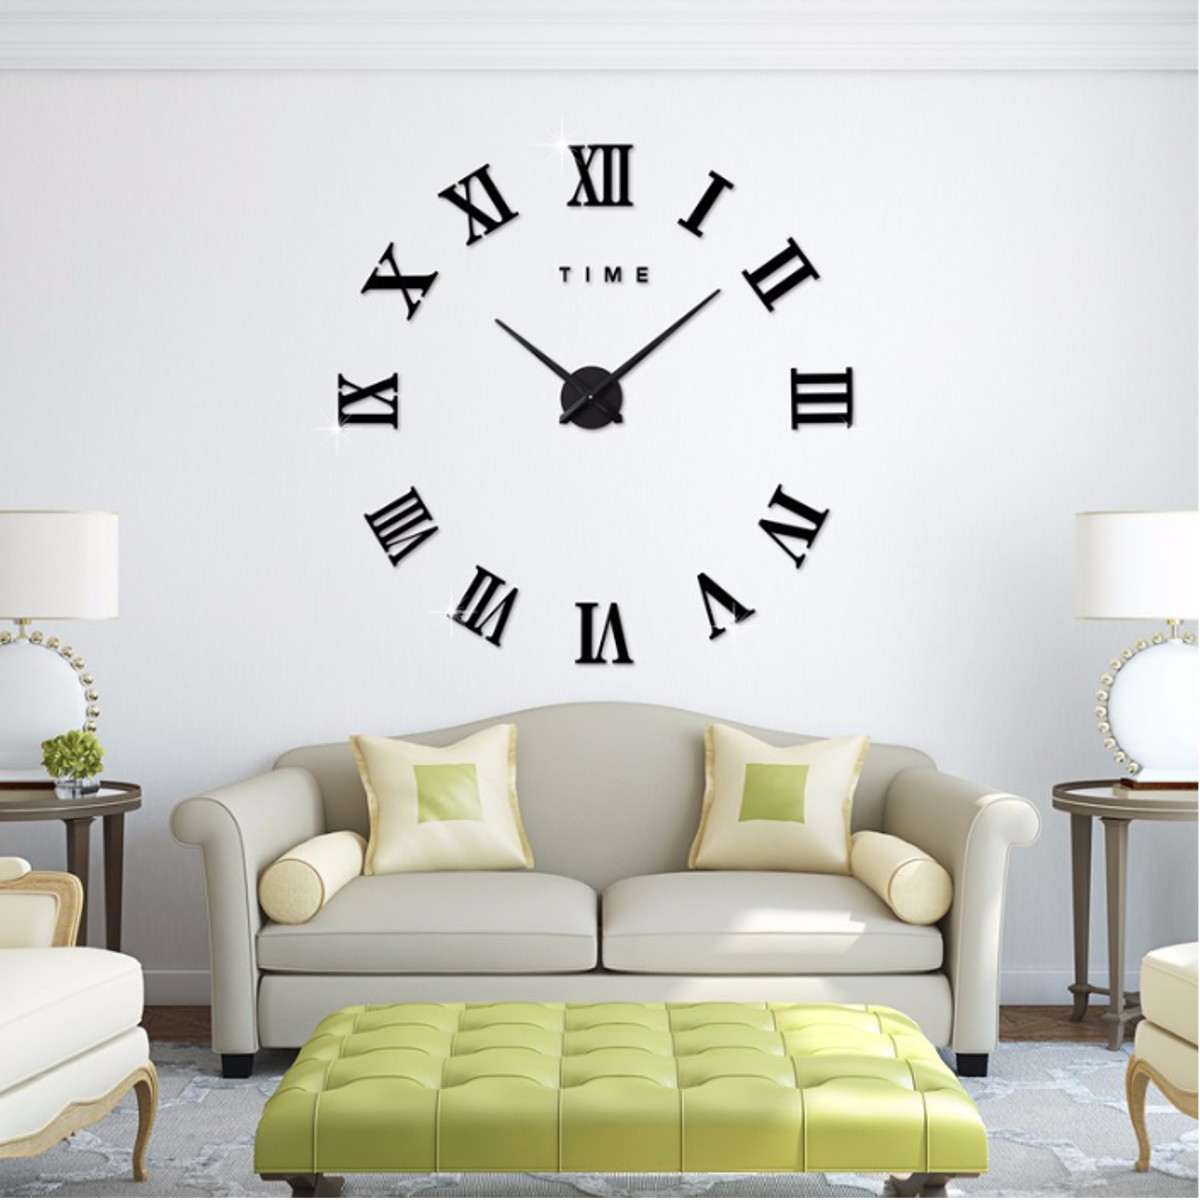 

Современный Дизайн DIY Большой Декоративный 3D Стены Часы Reloj Pared Adhesivo Римские цифры Зеркало Большие Часыs Наклейки Часы